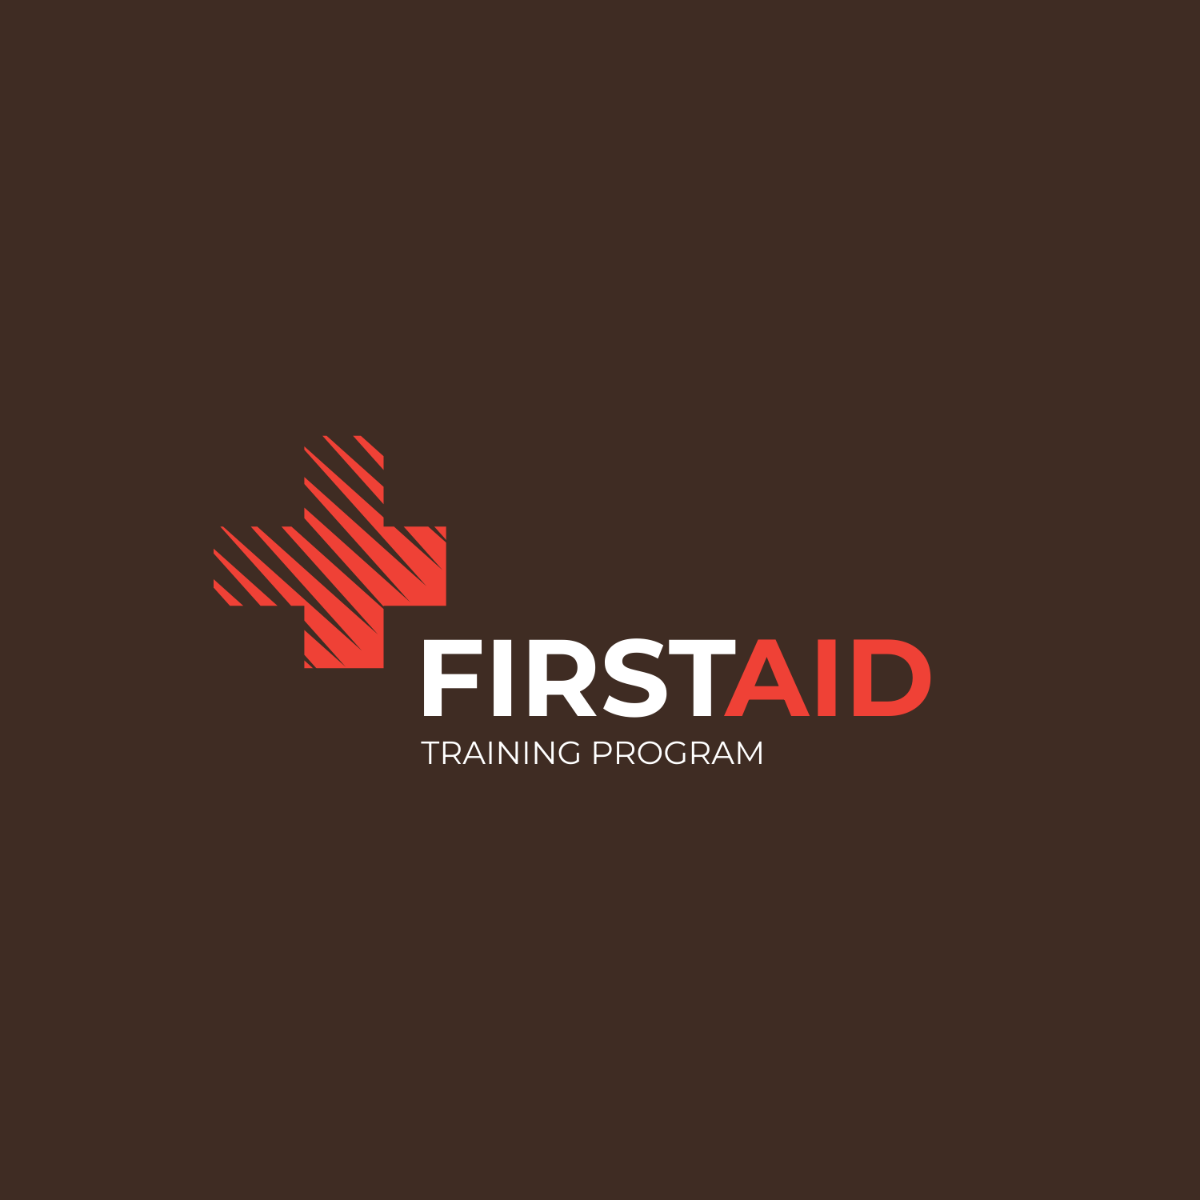 First Aid Training Program Logo